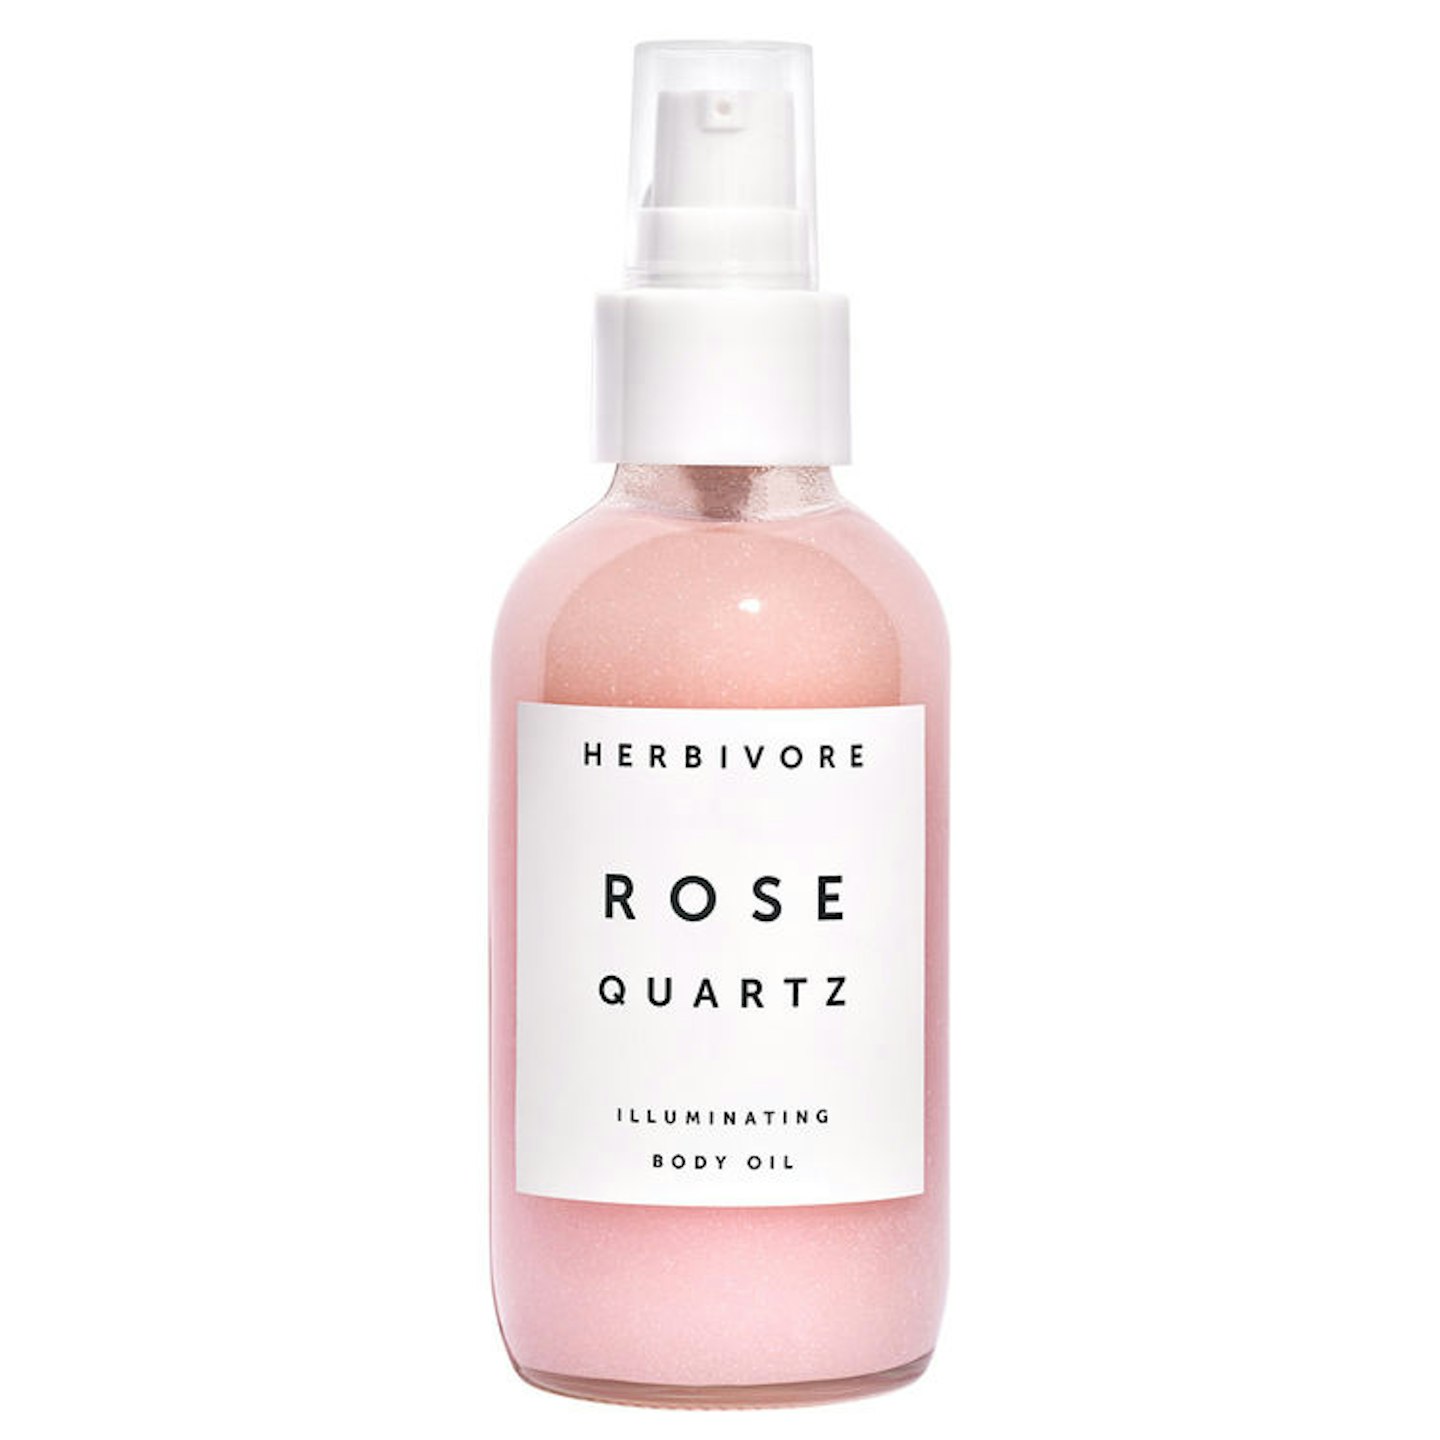 Herbivore Rose Quartz Illuminating Body Oil, £38